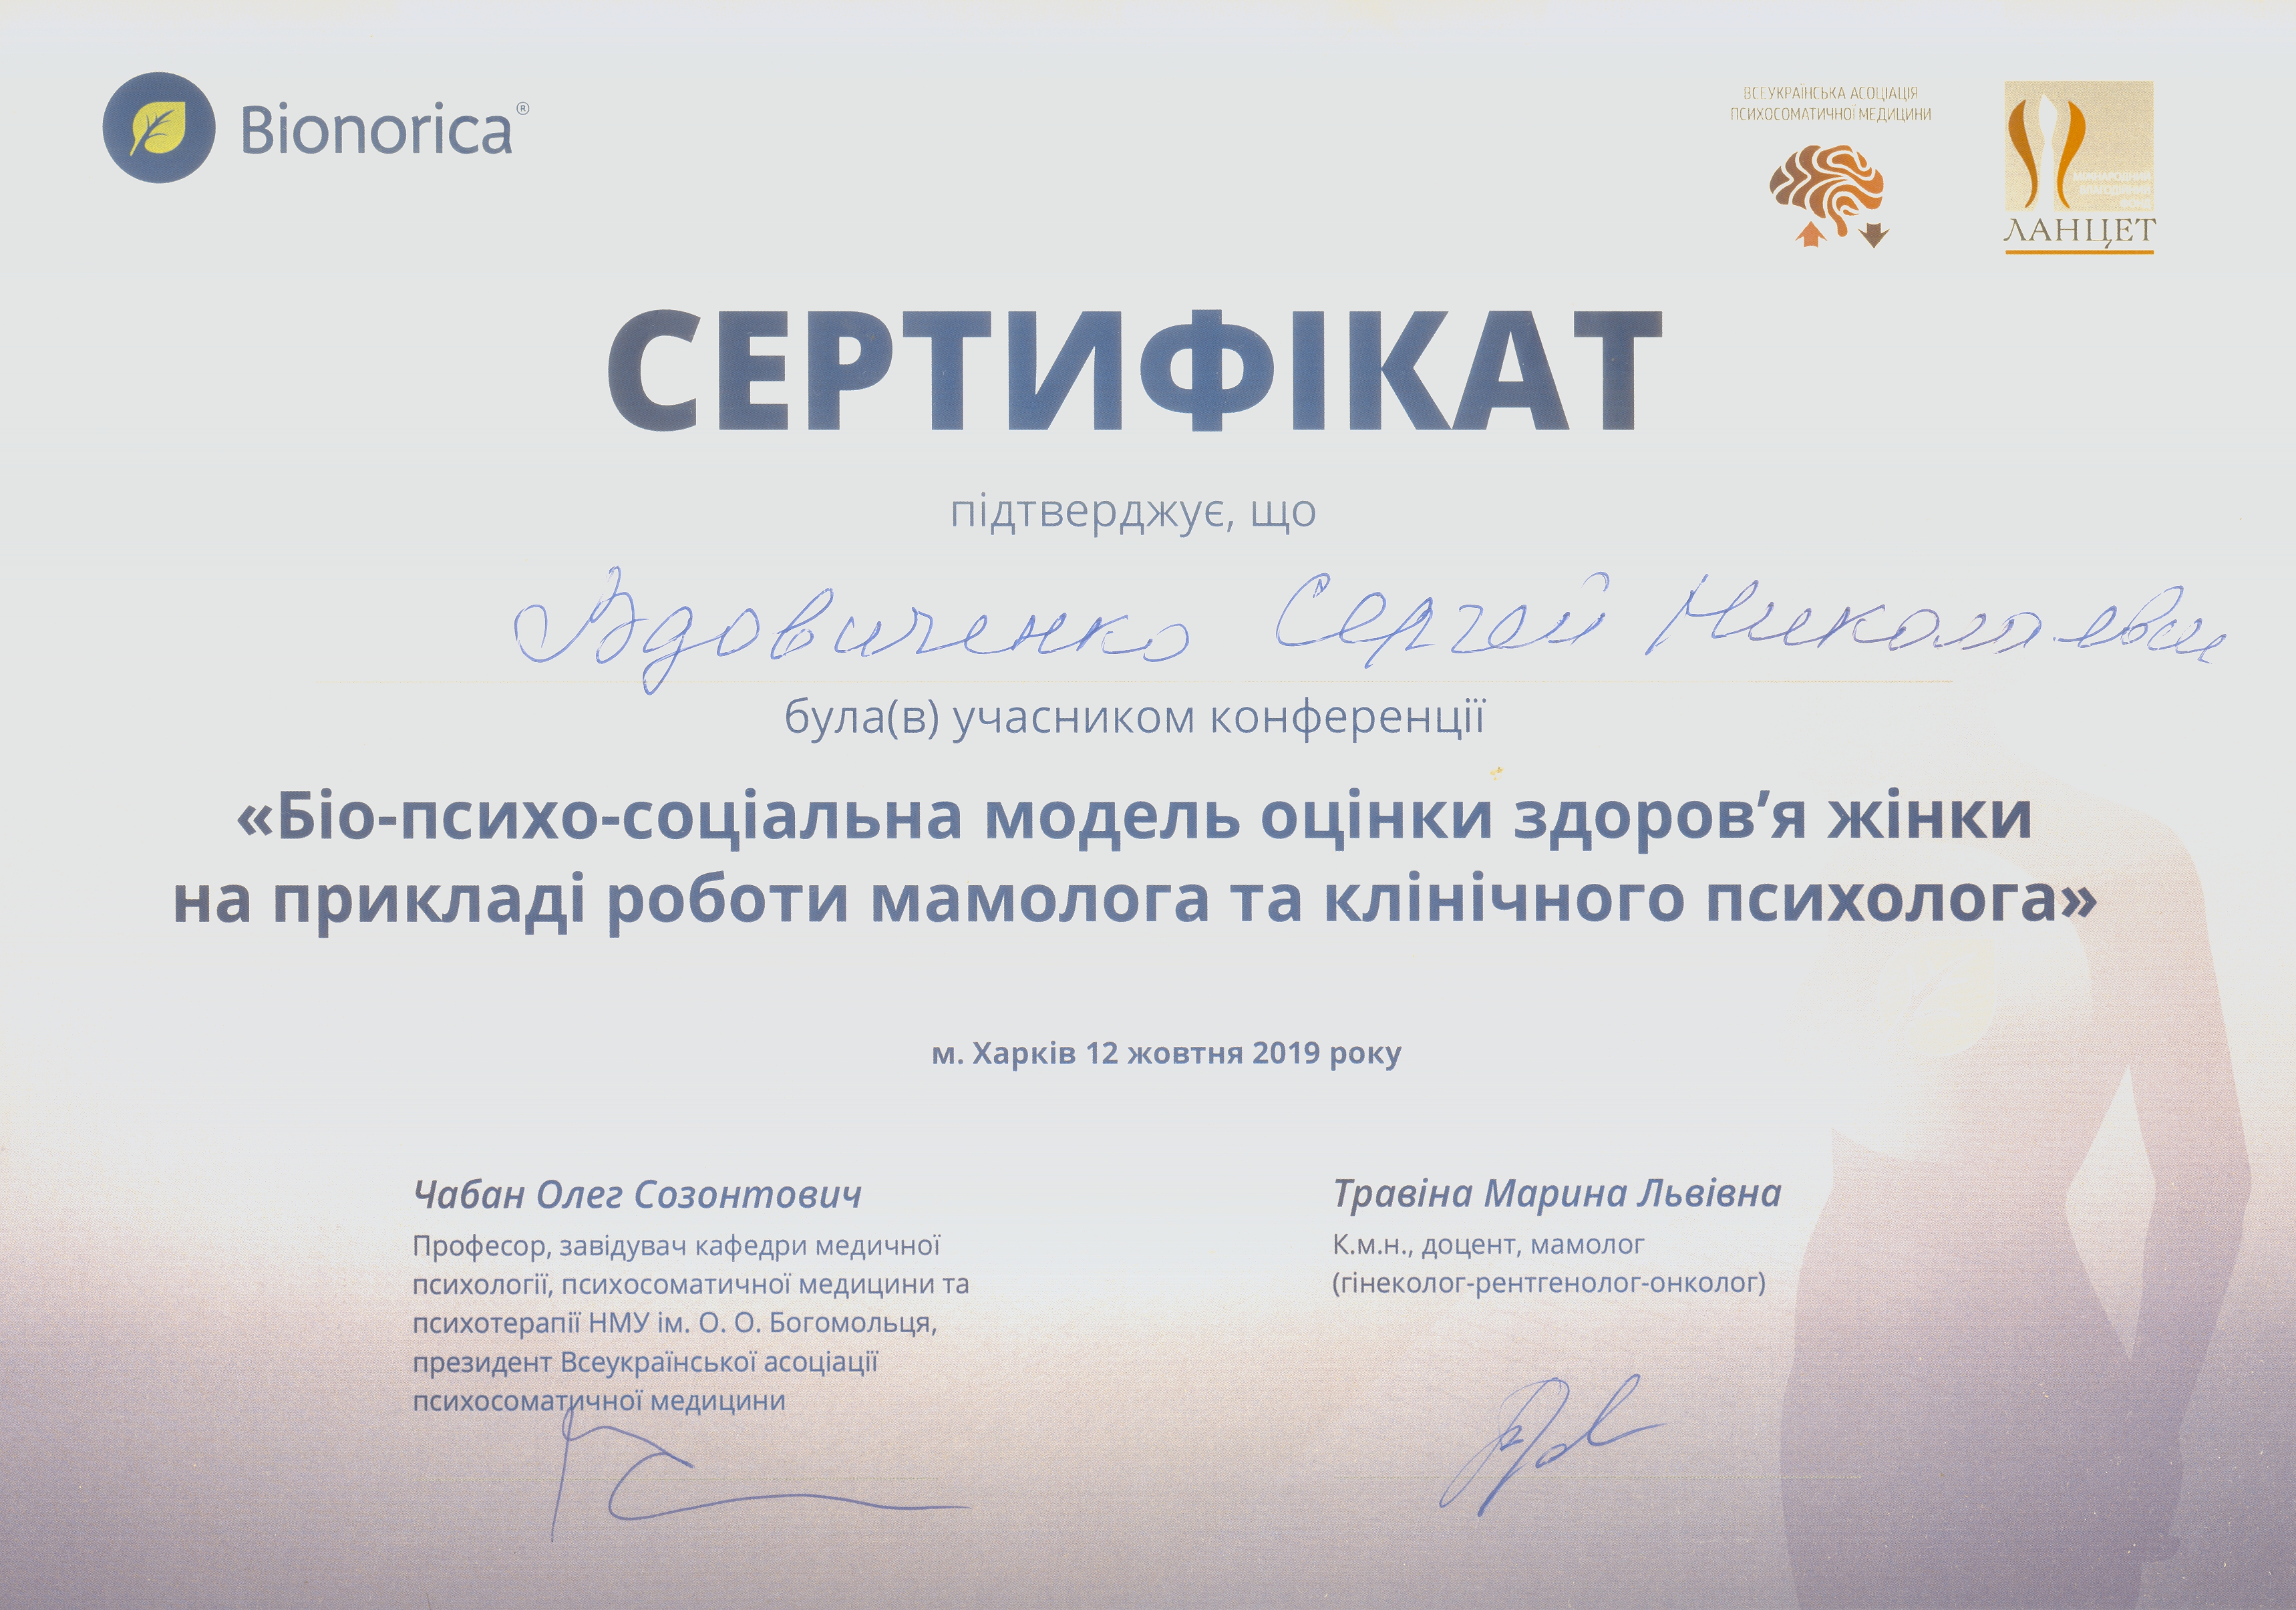 Сертификат Вдовиченко Сергей Био психо